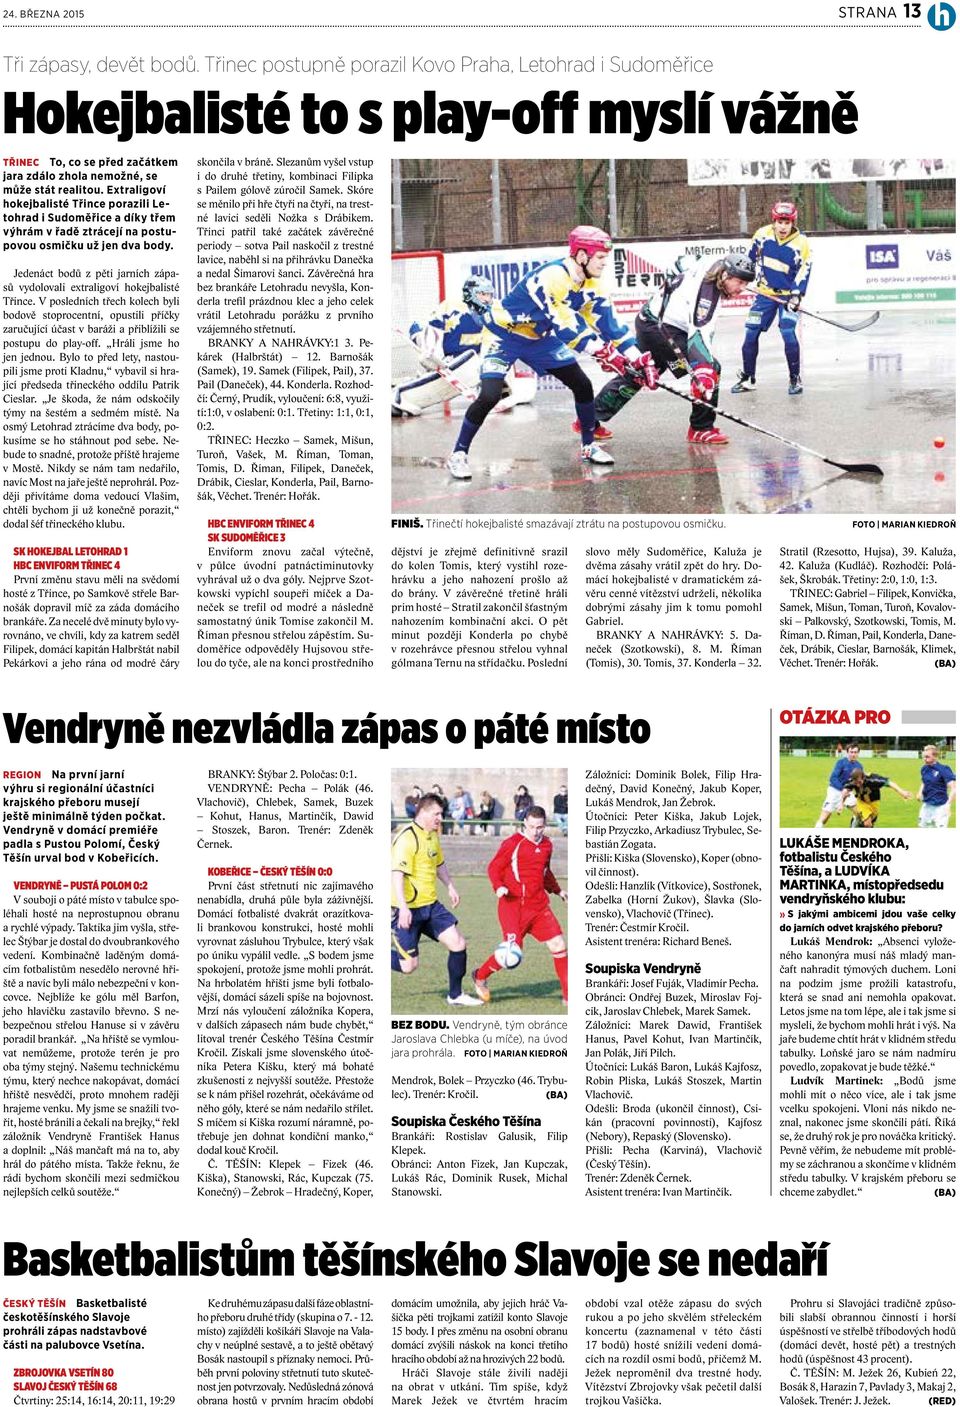 Extraligoví hokejbalisté Třince porazili Letohrad i Sudoměřice a díky třem výhrám v řadě ztrácejí na postupovou osmičku už jen dva body.